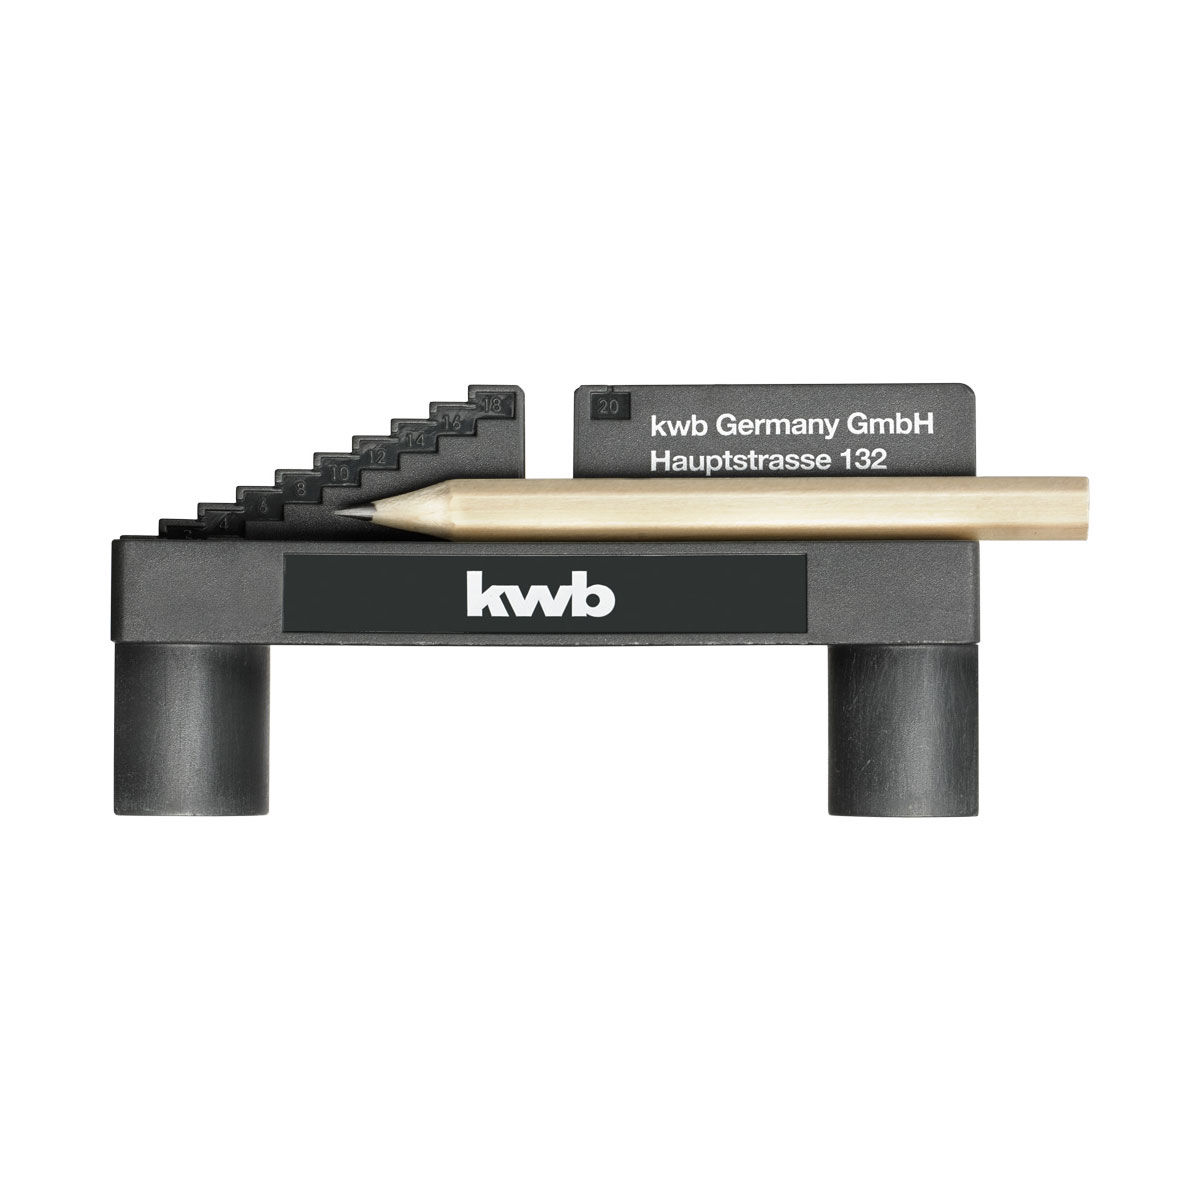 kwb Mittenfinder mit Bleistift und 1...20 von mm. | Anzeichenhilfe Skala metrischer als 276616